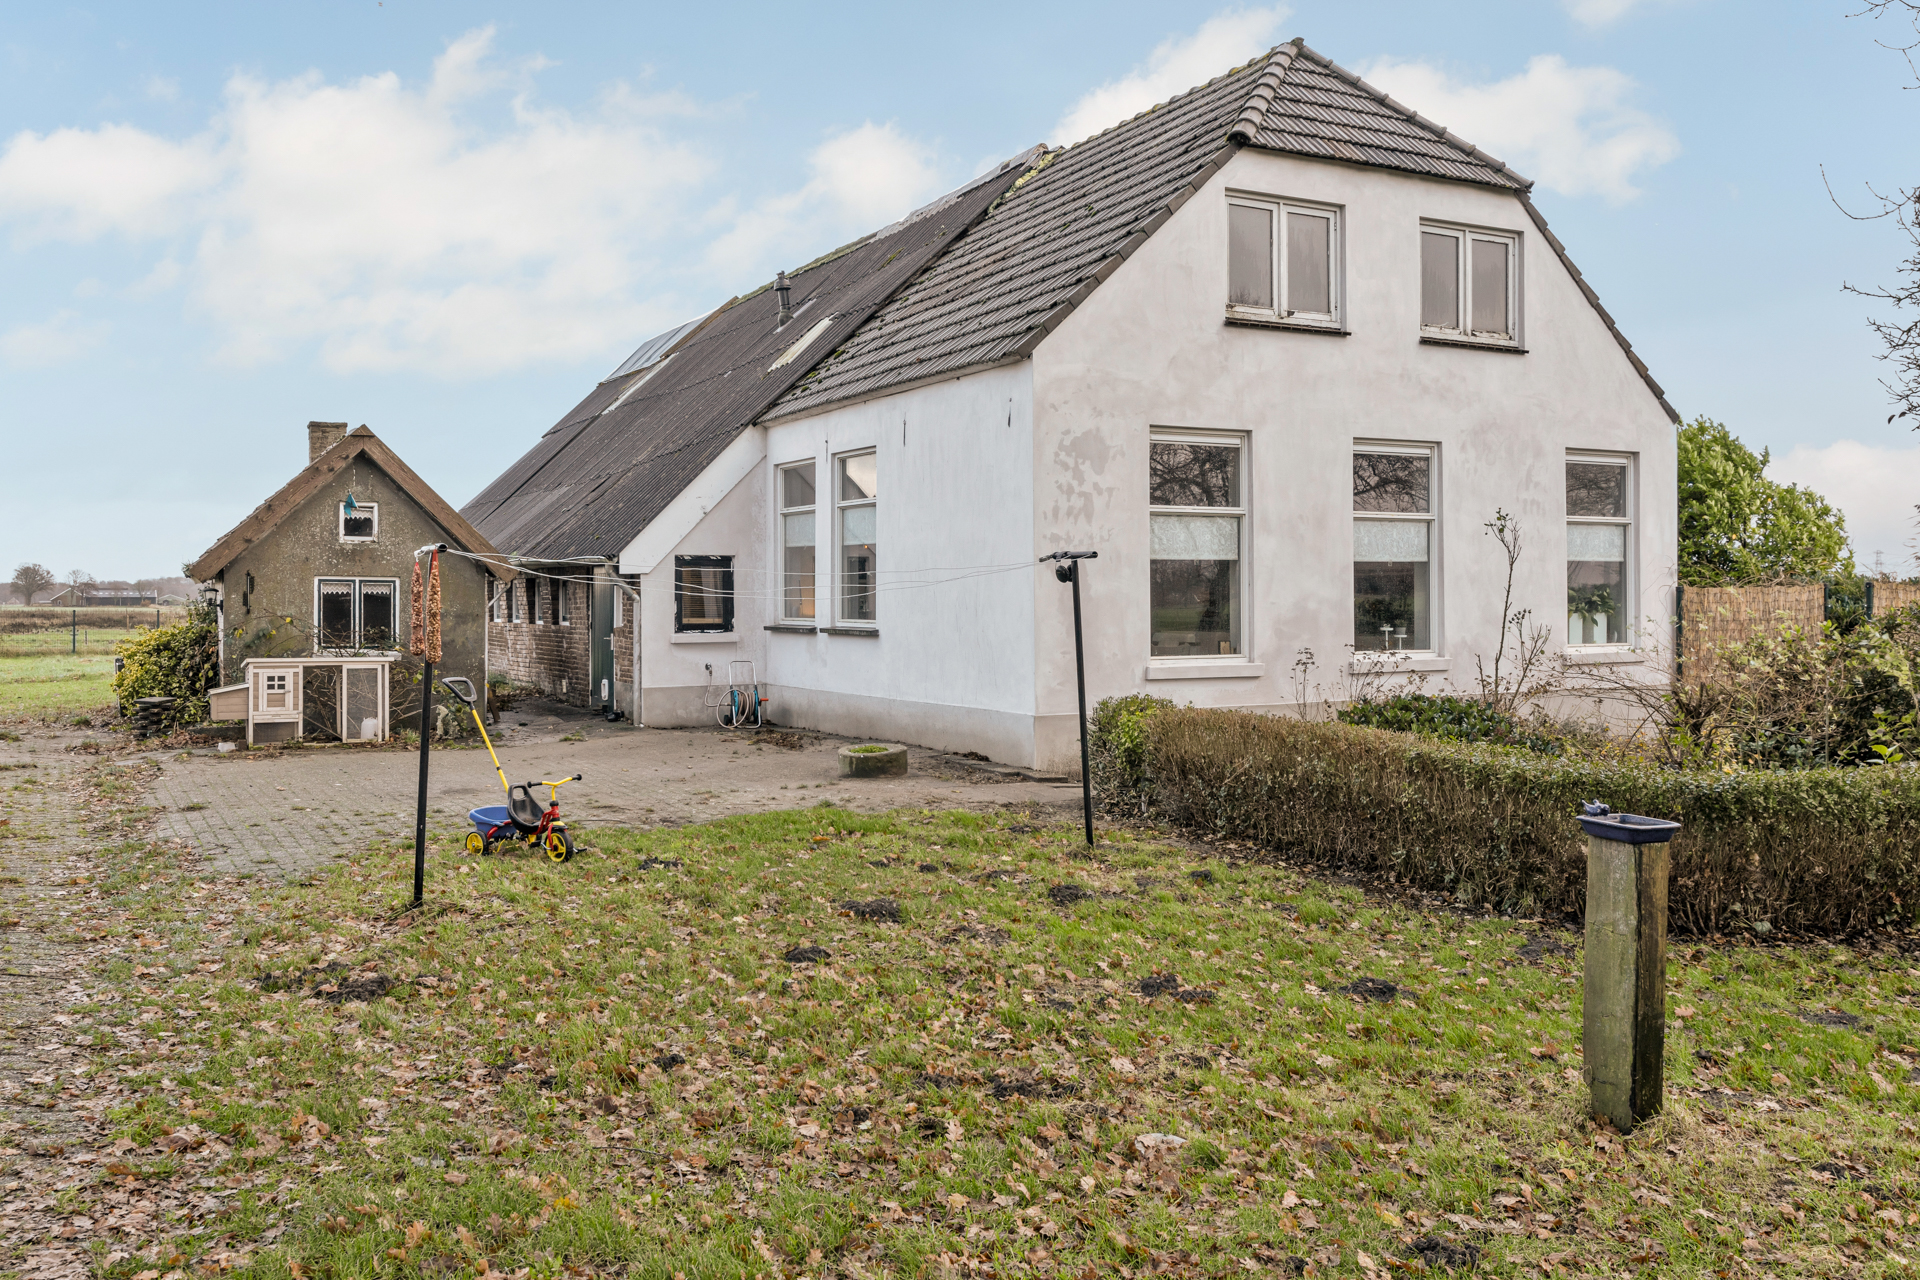 Succesvol verkocht. Woonboerderij Vinkenbuurt Overijssel verkocht door het Betere Boerenerf, makelaar in woonboerderijen.